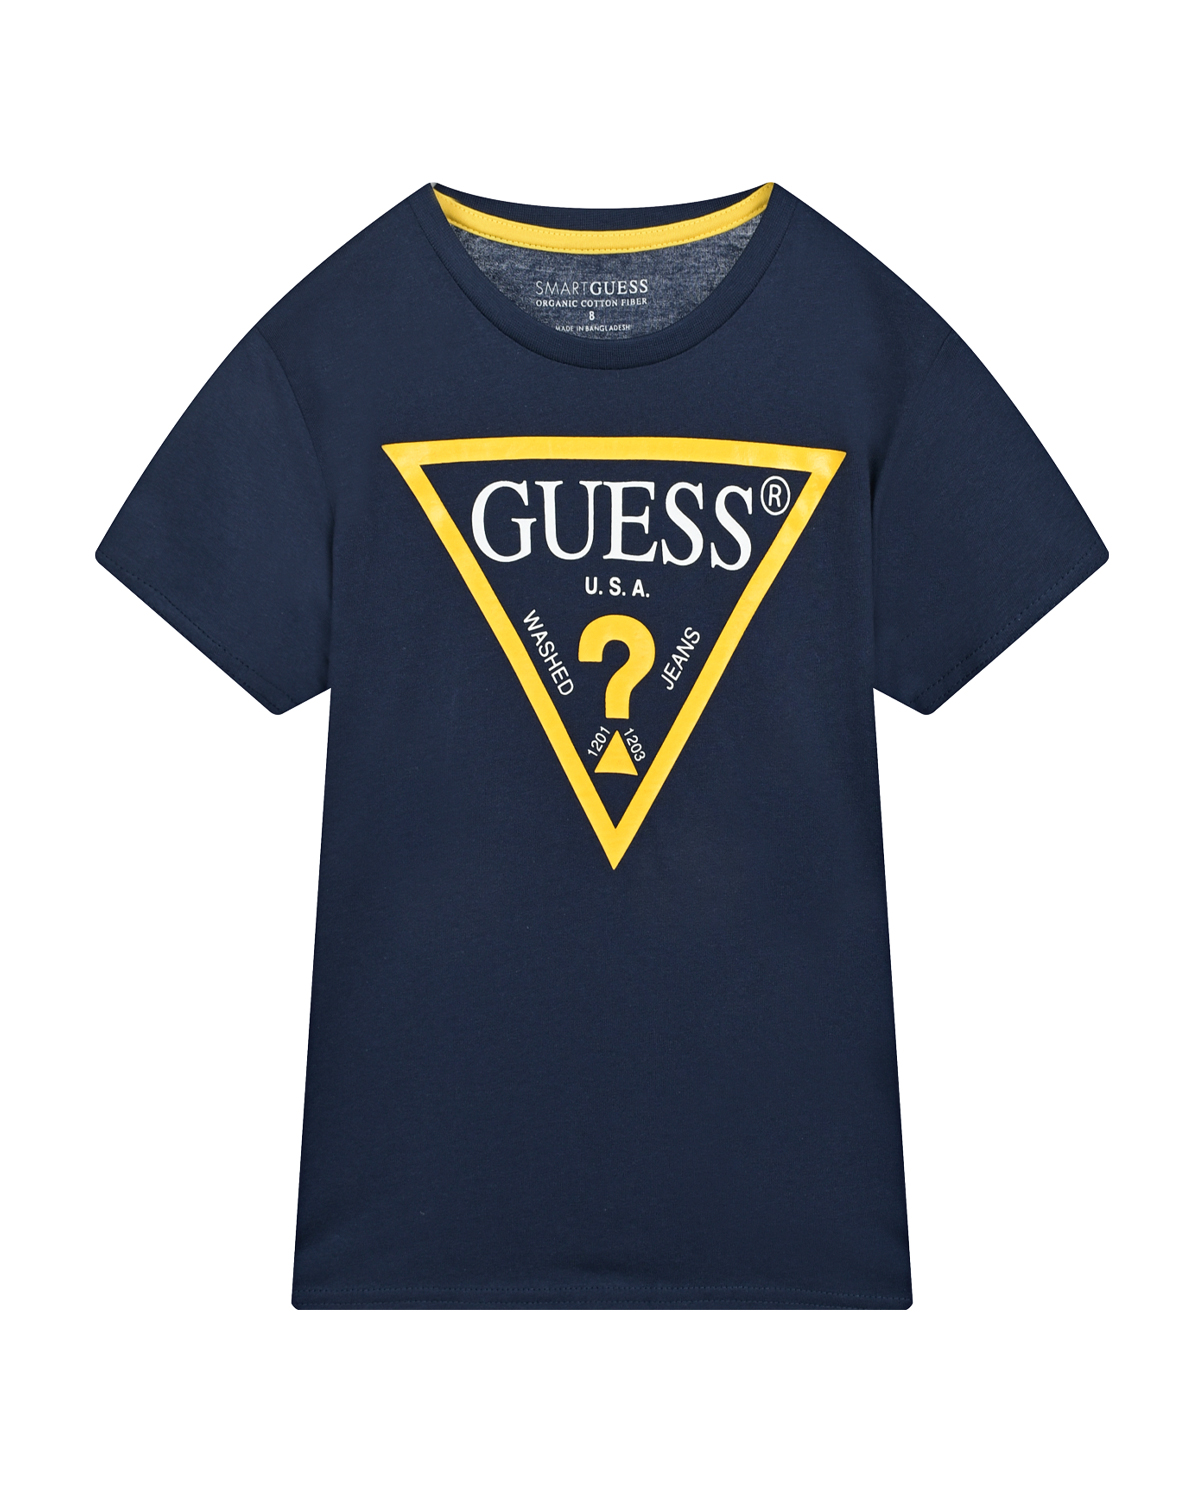 Темно-синяя футболка с желтым лого Guess детское